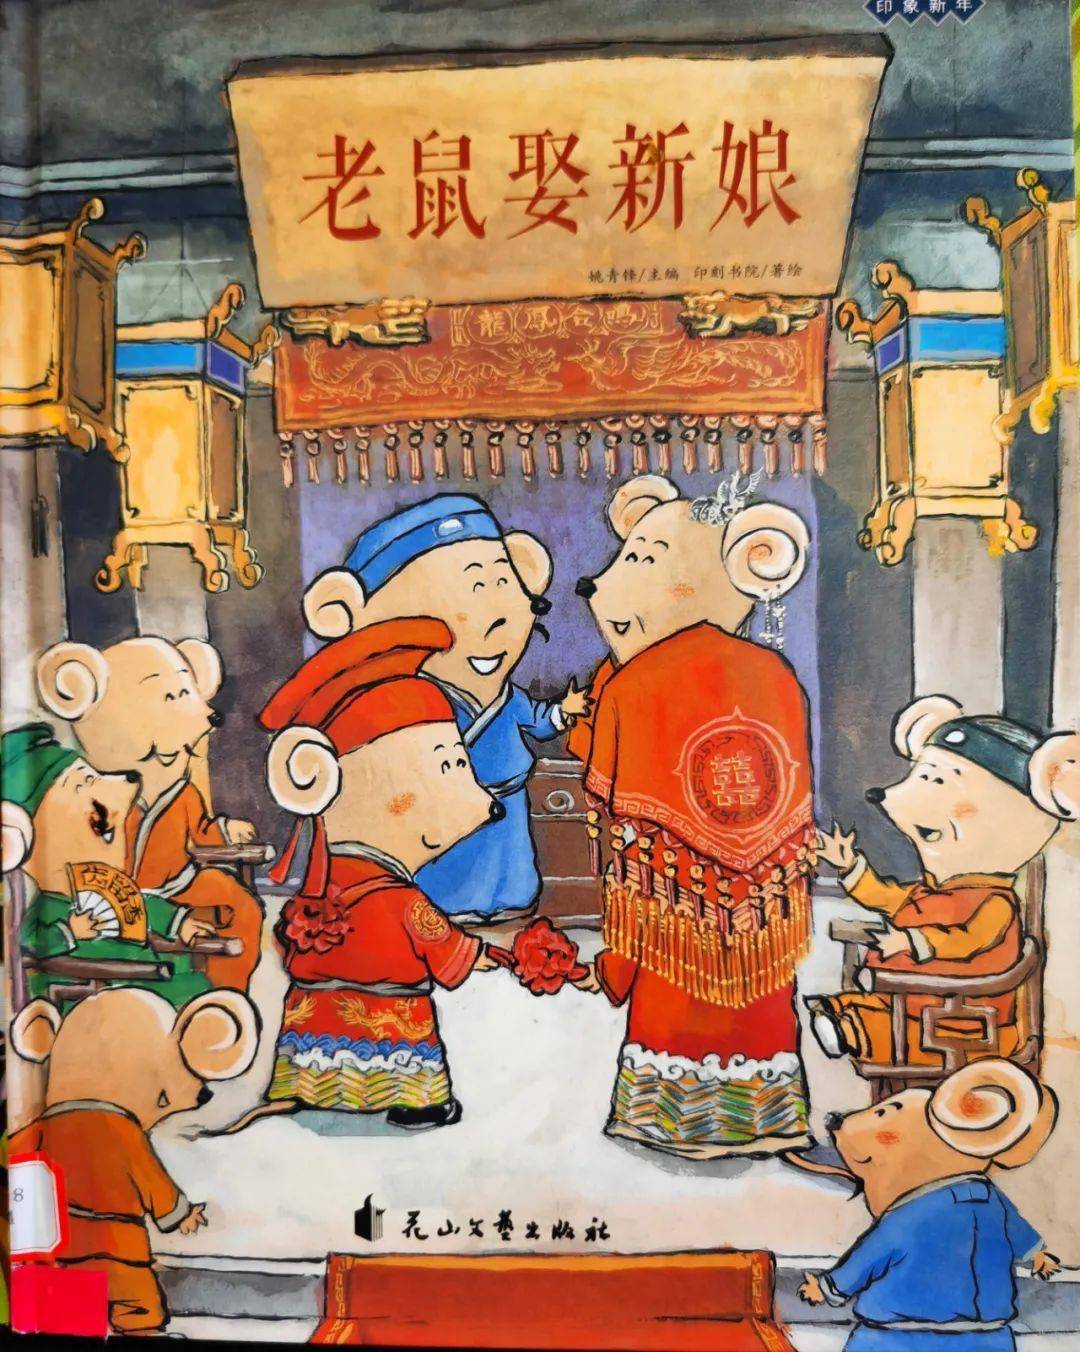 绘本推荐 《老鼠娶新娘》 在中国的习俗中,年初三是老鼠娶新娘的日子